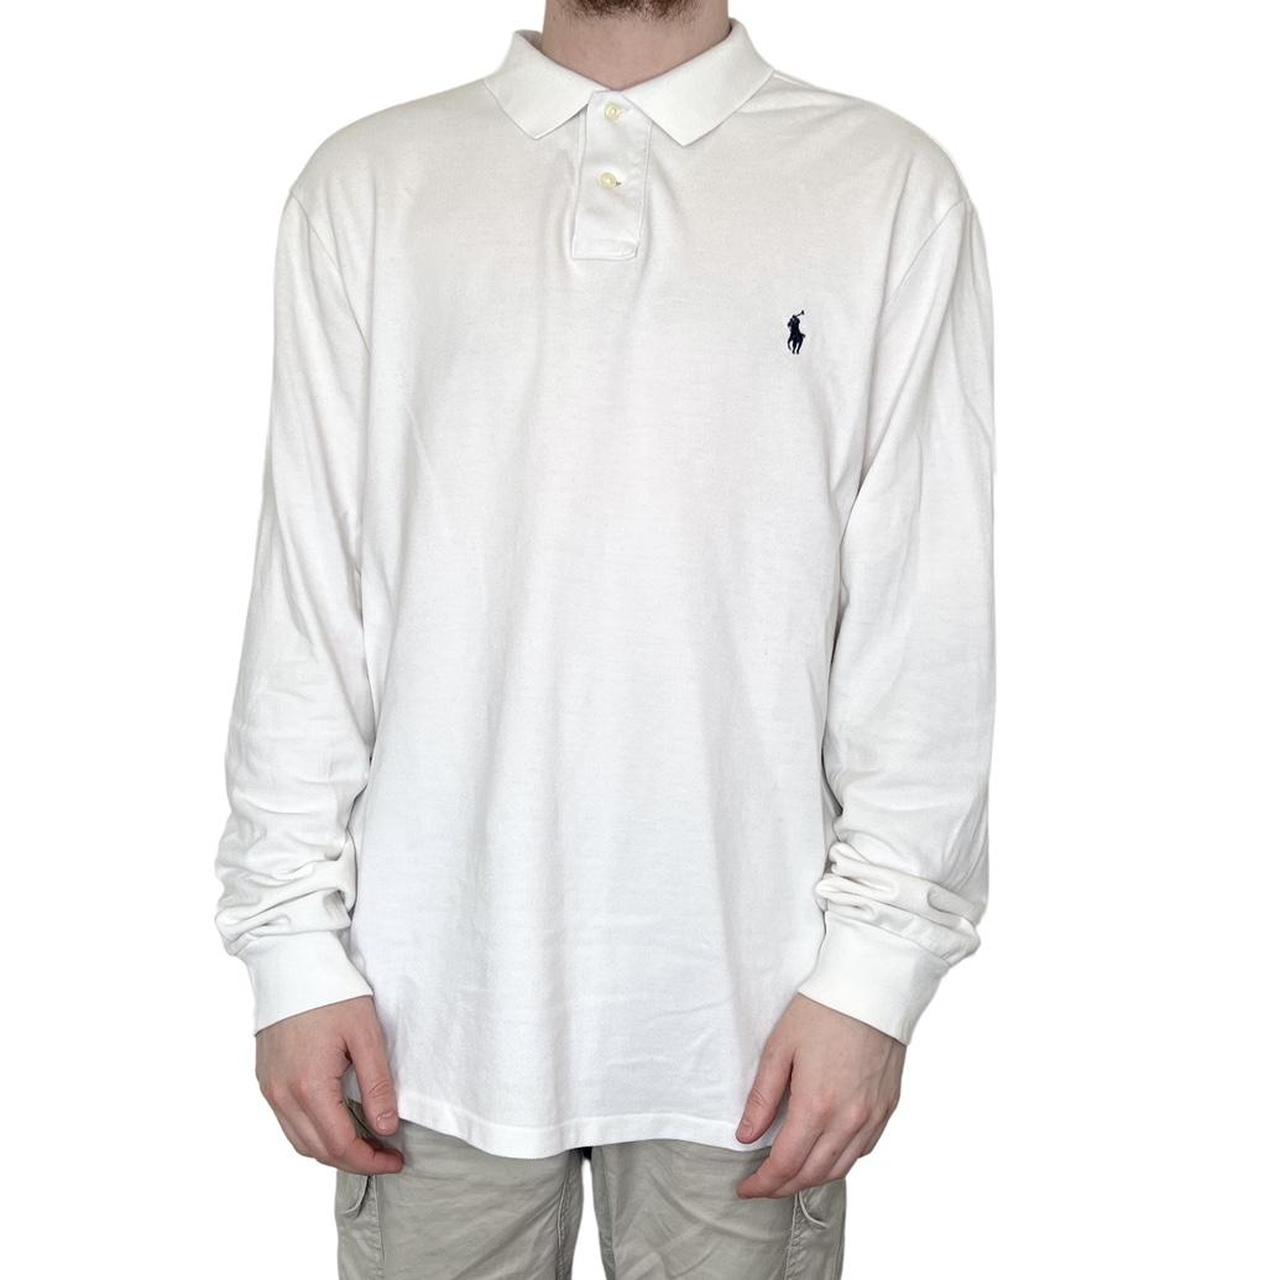 Ralph Lauren long sleeve polo shirt - size XXL... - Depop